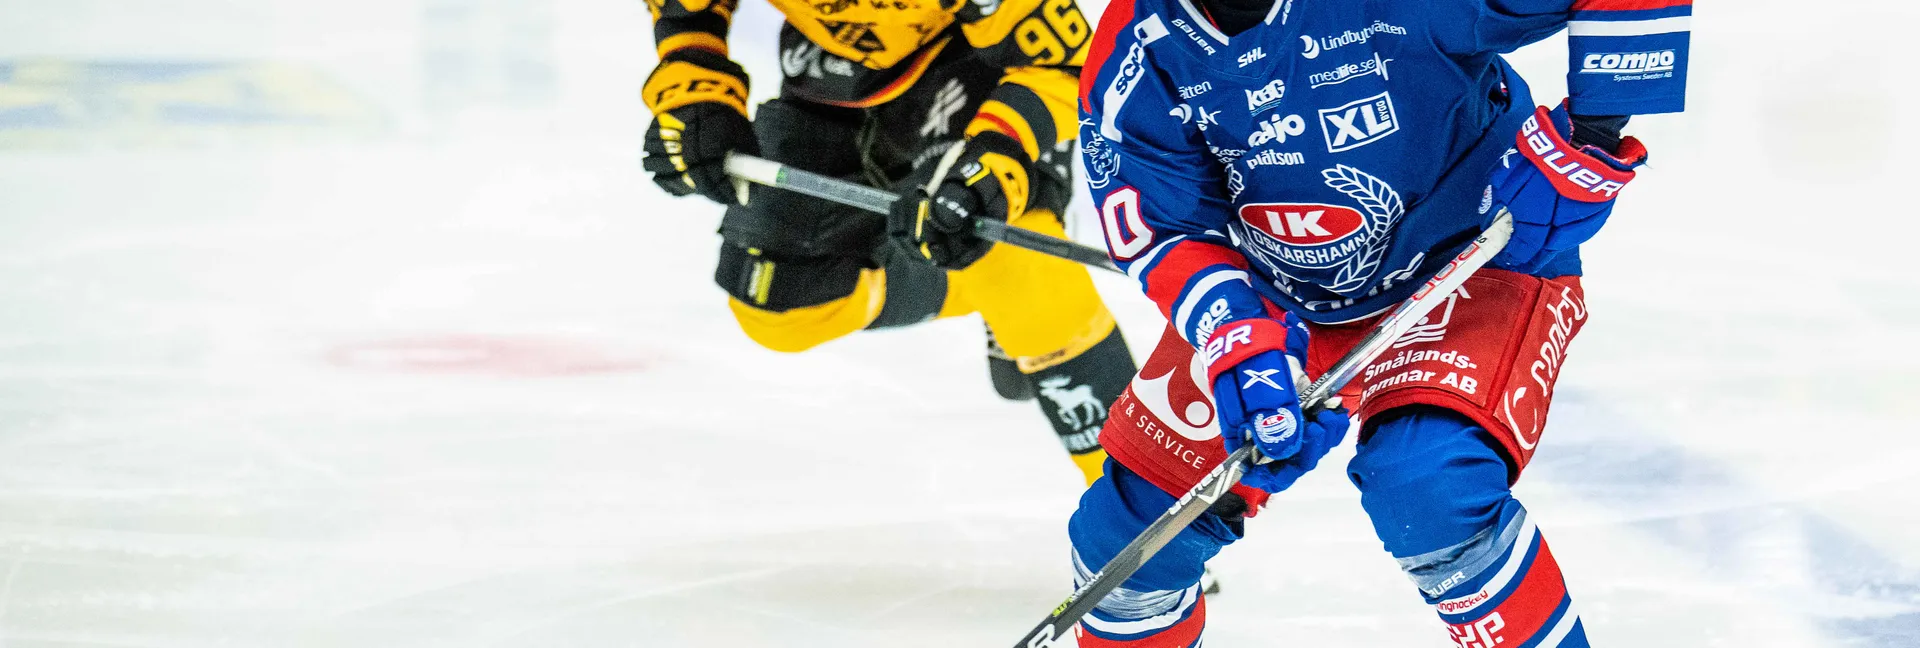 Ishockeymatch mellan Oskarshamn och Skellefteå i SHL